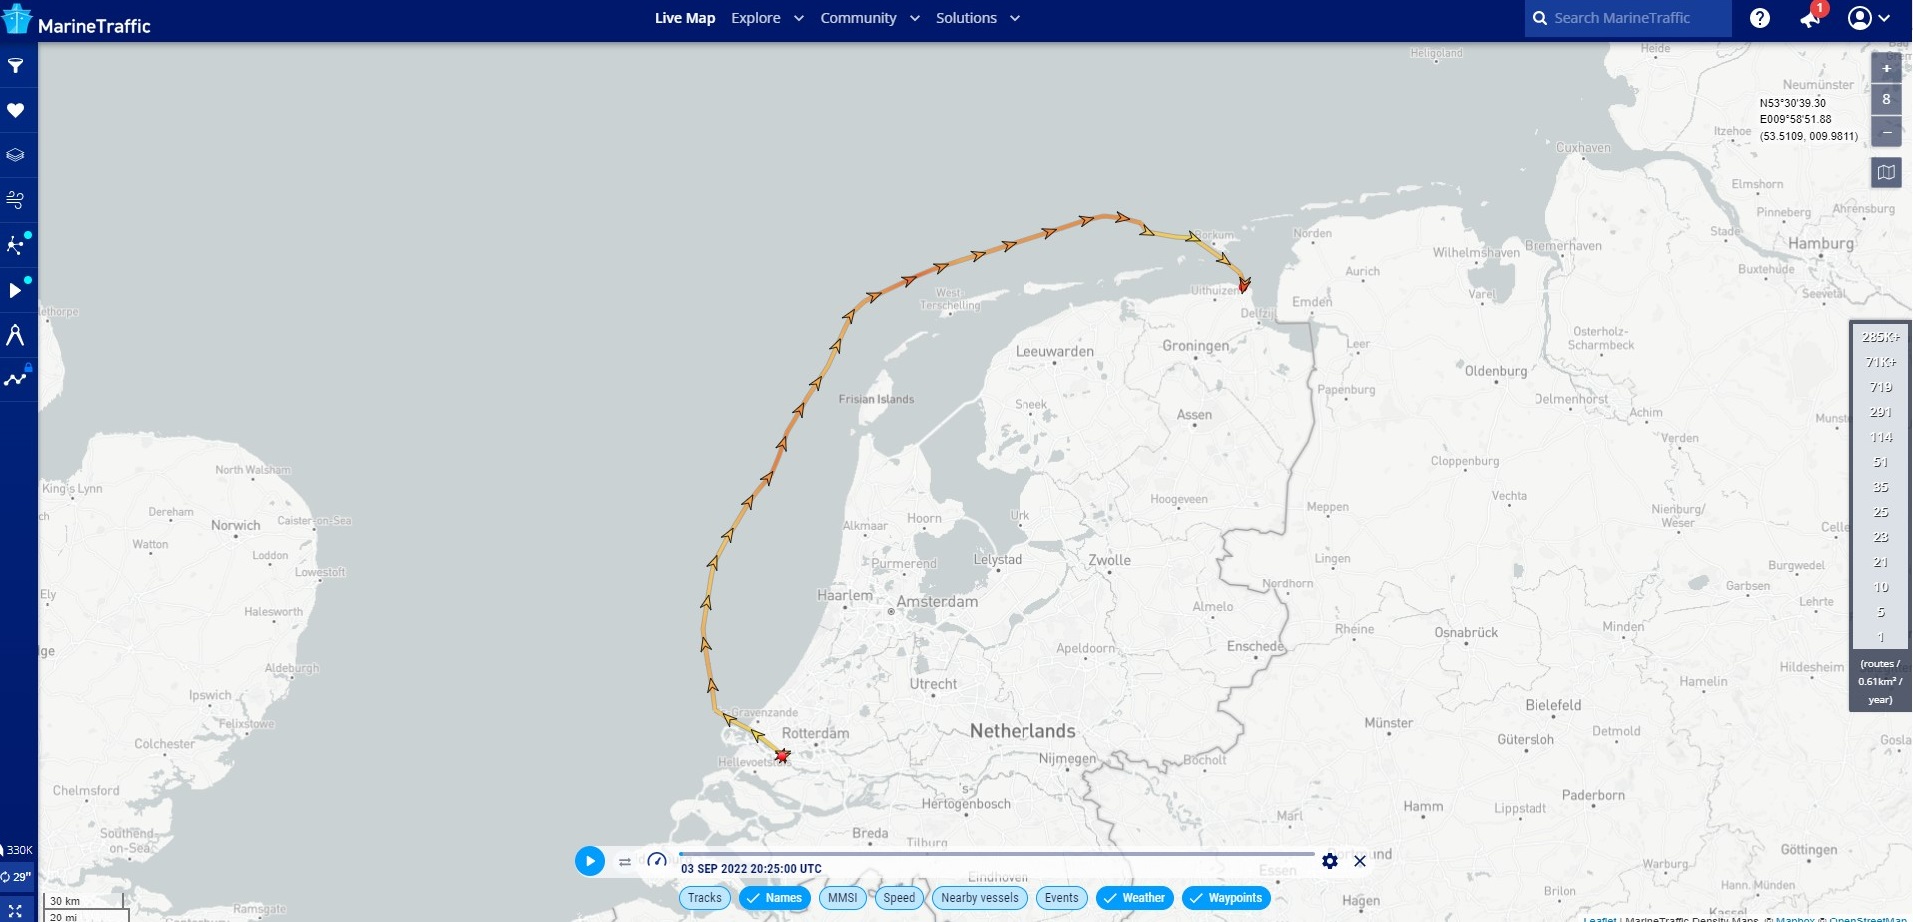  Eemshaven LNG arrived at Eemshaven on 6 September